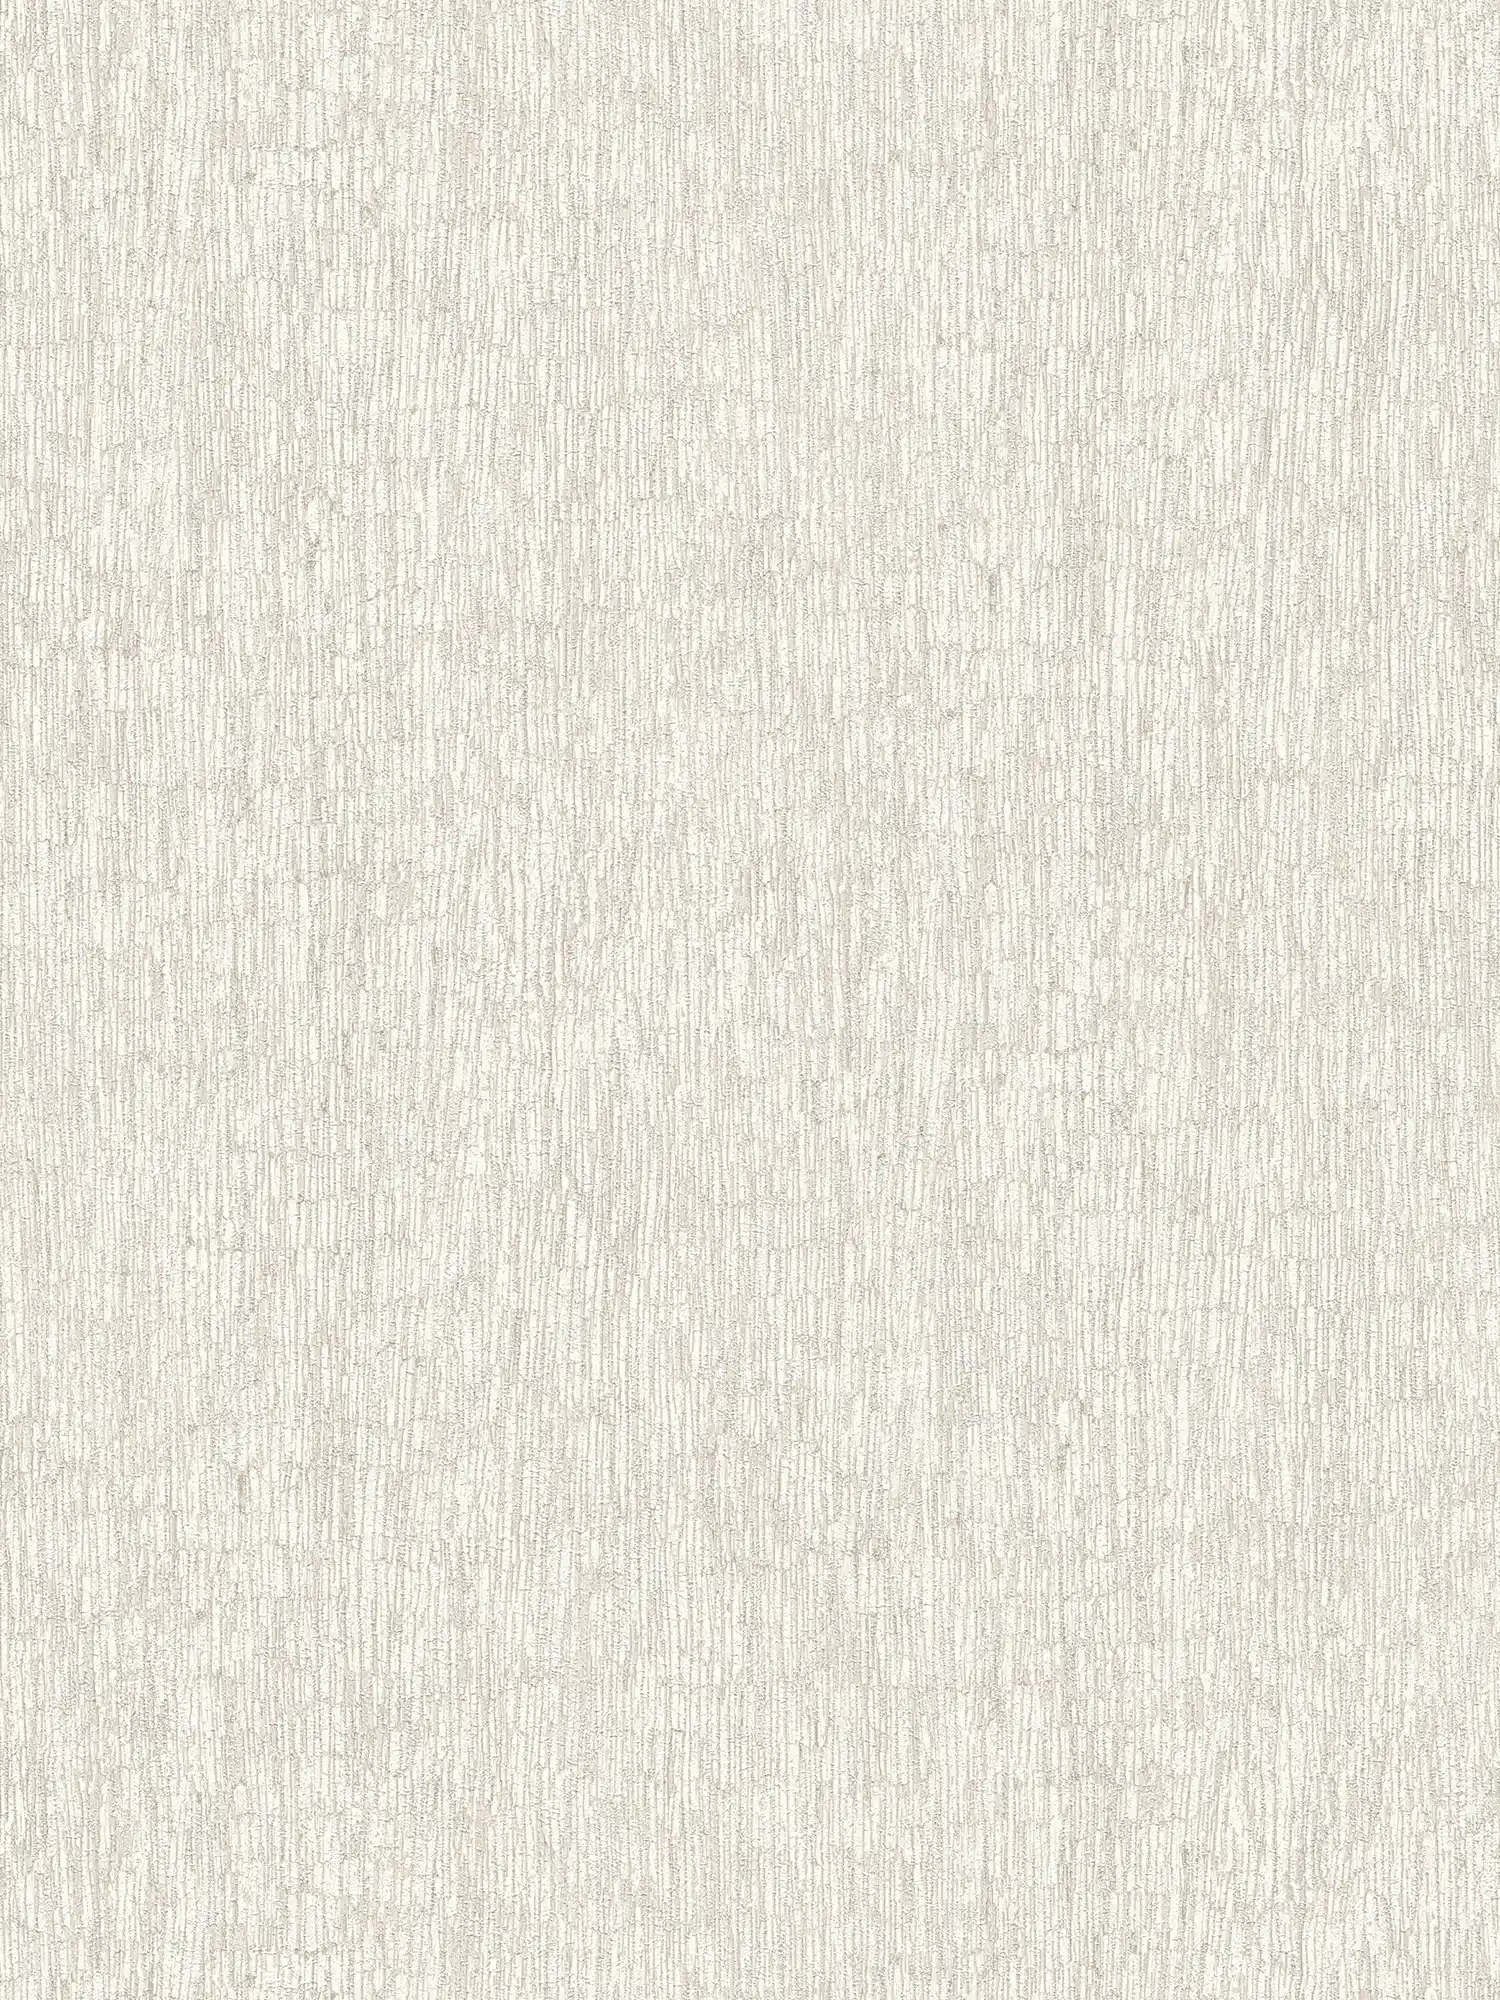 Vliestapete in Textiloptik leicht glänzend – Weiß, Grau, Silber
